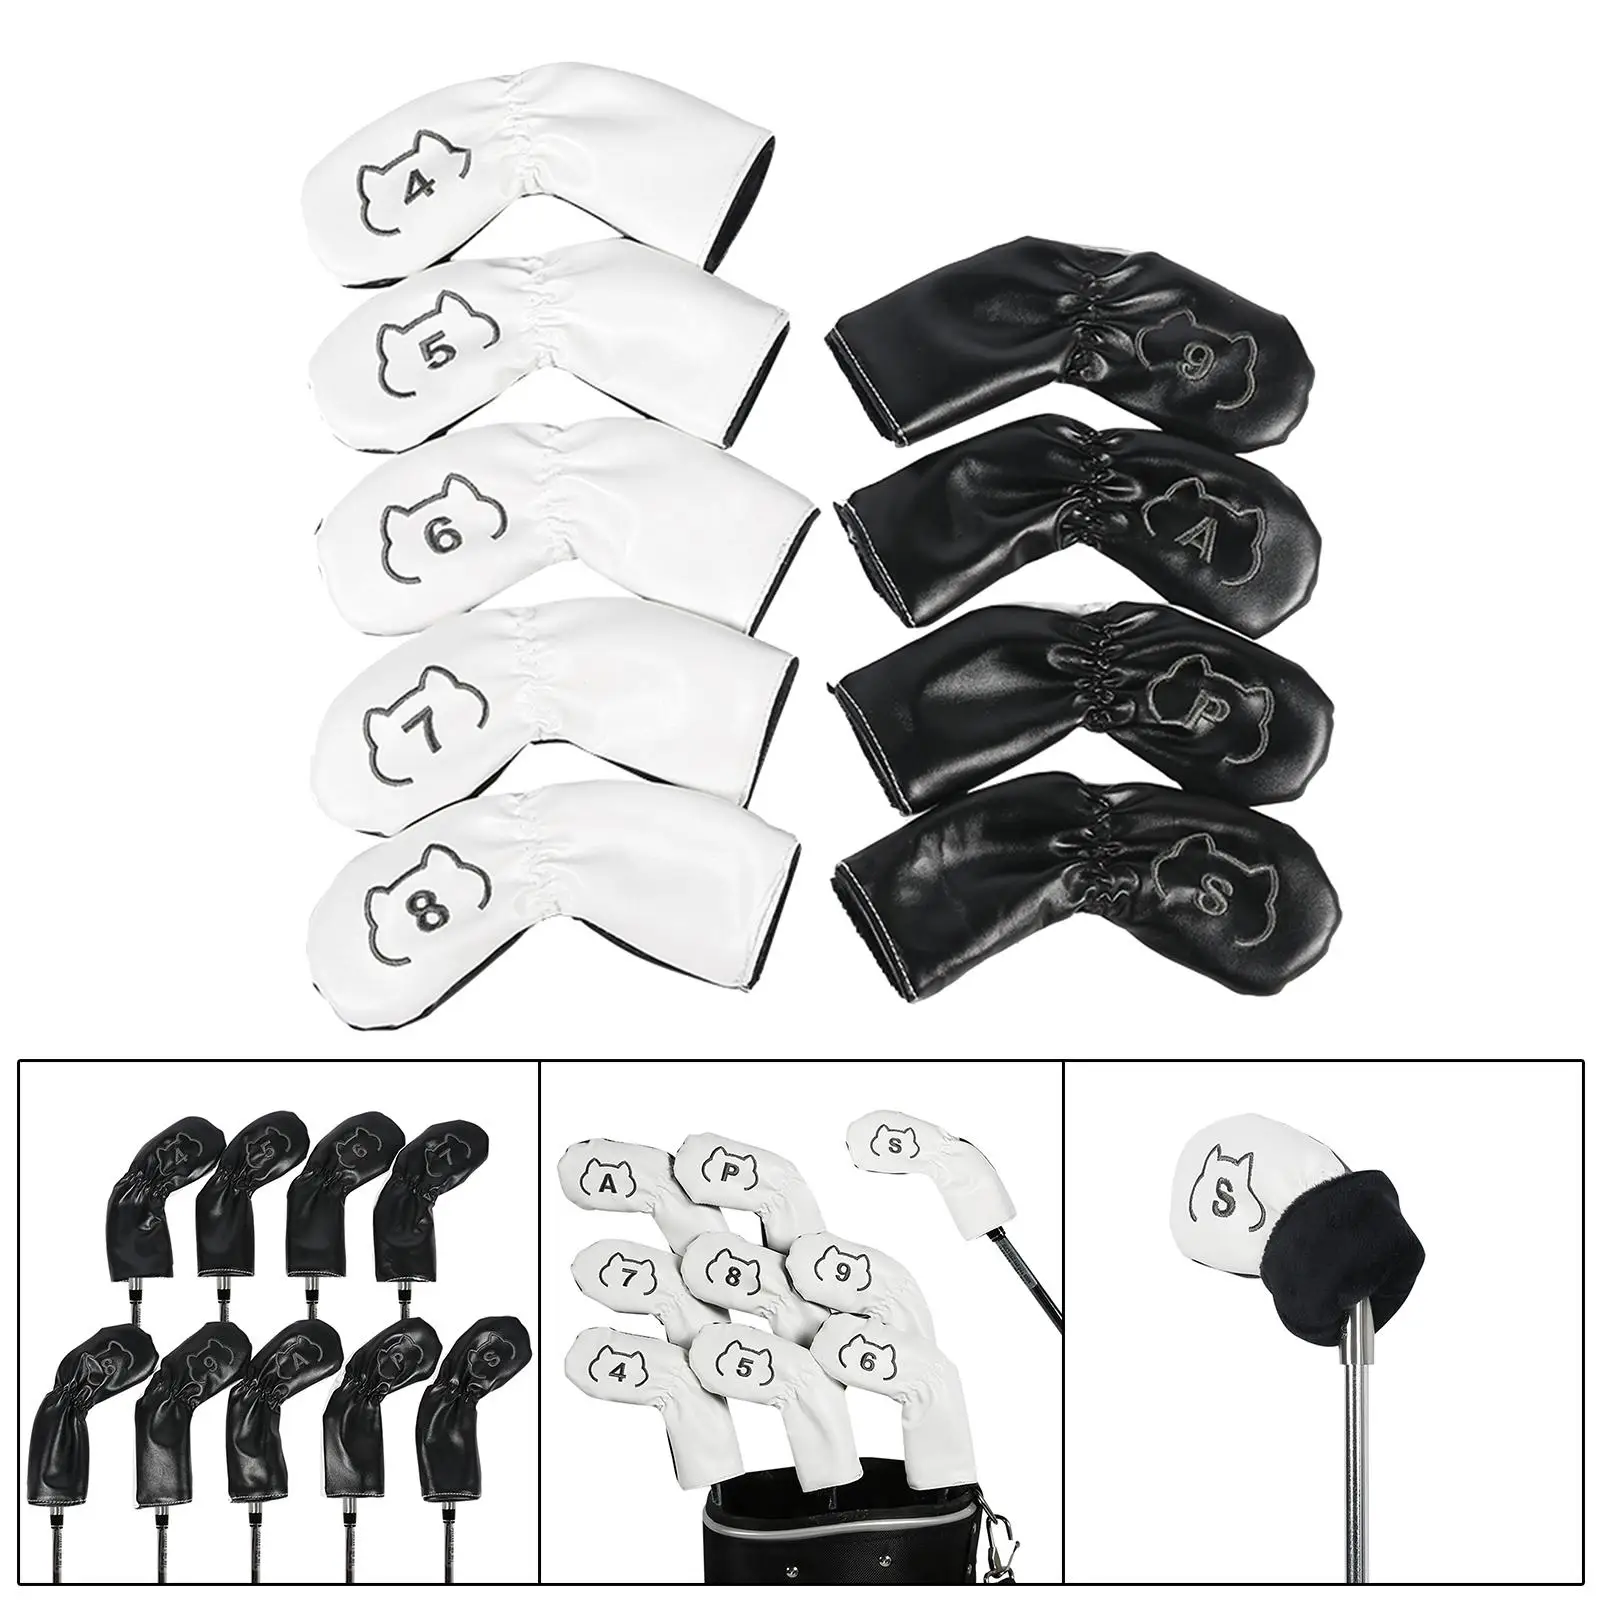 9 шт. головные уборы для клюшек для гольфа, декоративные водонепроницаемые полиуретановые головные уборы для гольфа